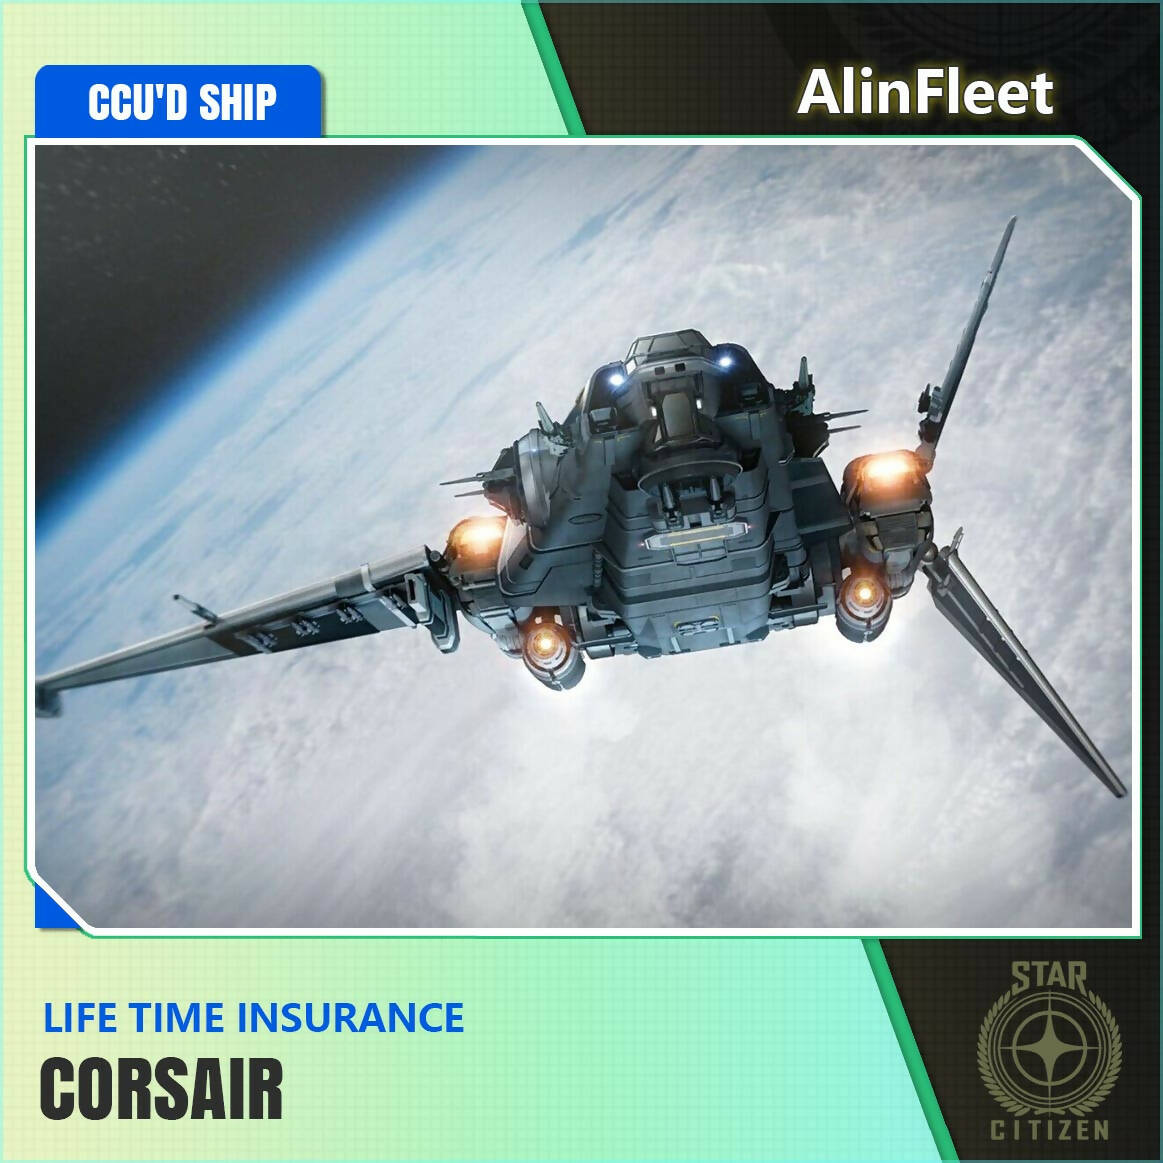 Corsair Best In Show - BIS 2953 - LTI Insurance - CCU'd Ship